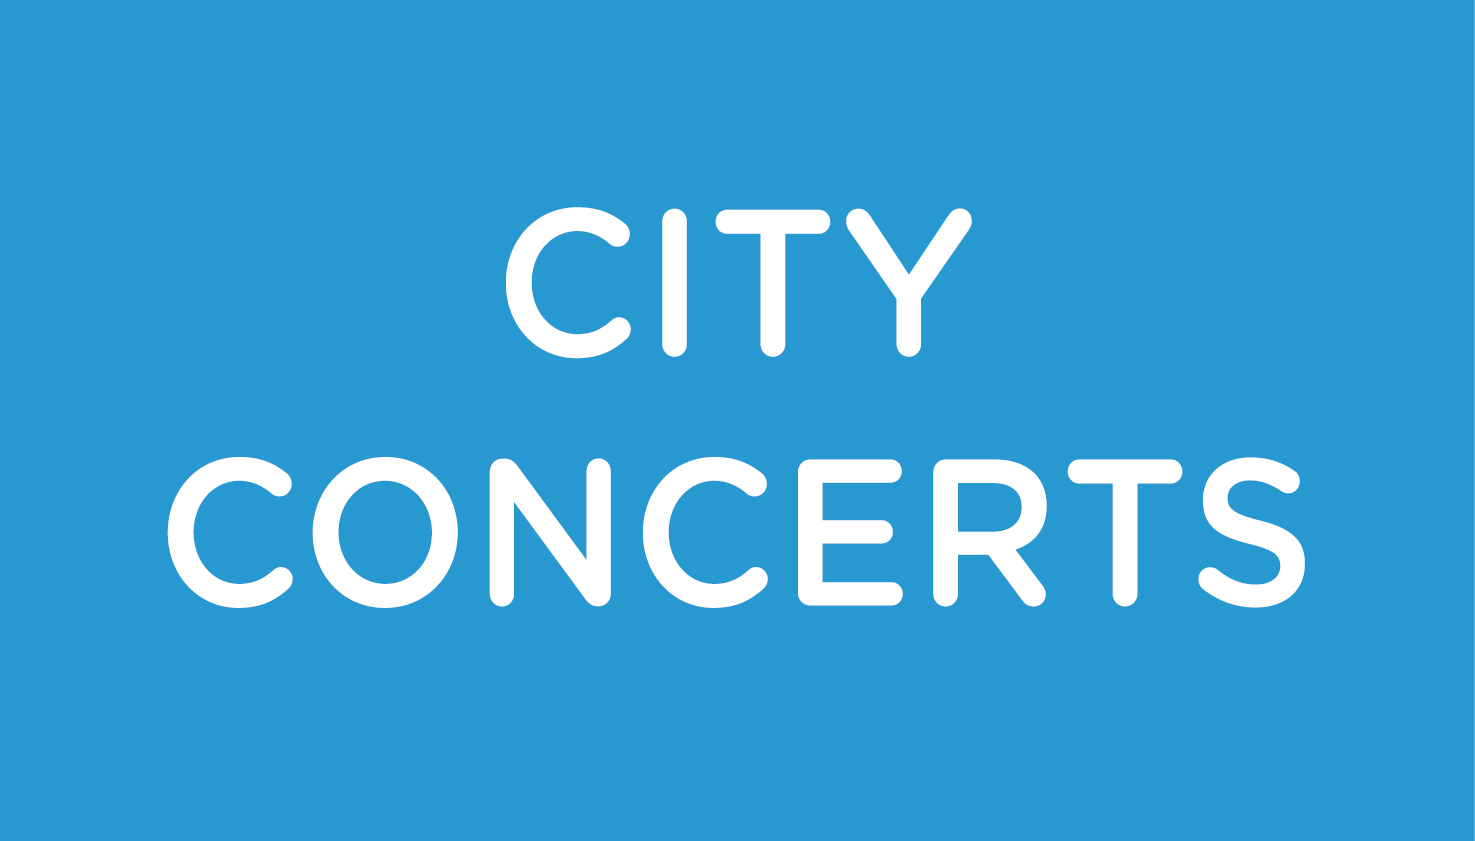 CityConcerts_logo_1118-2